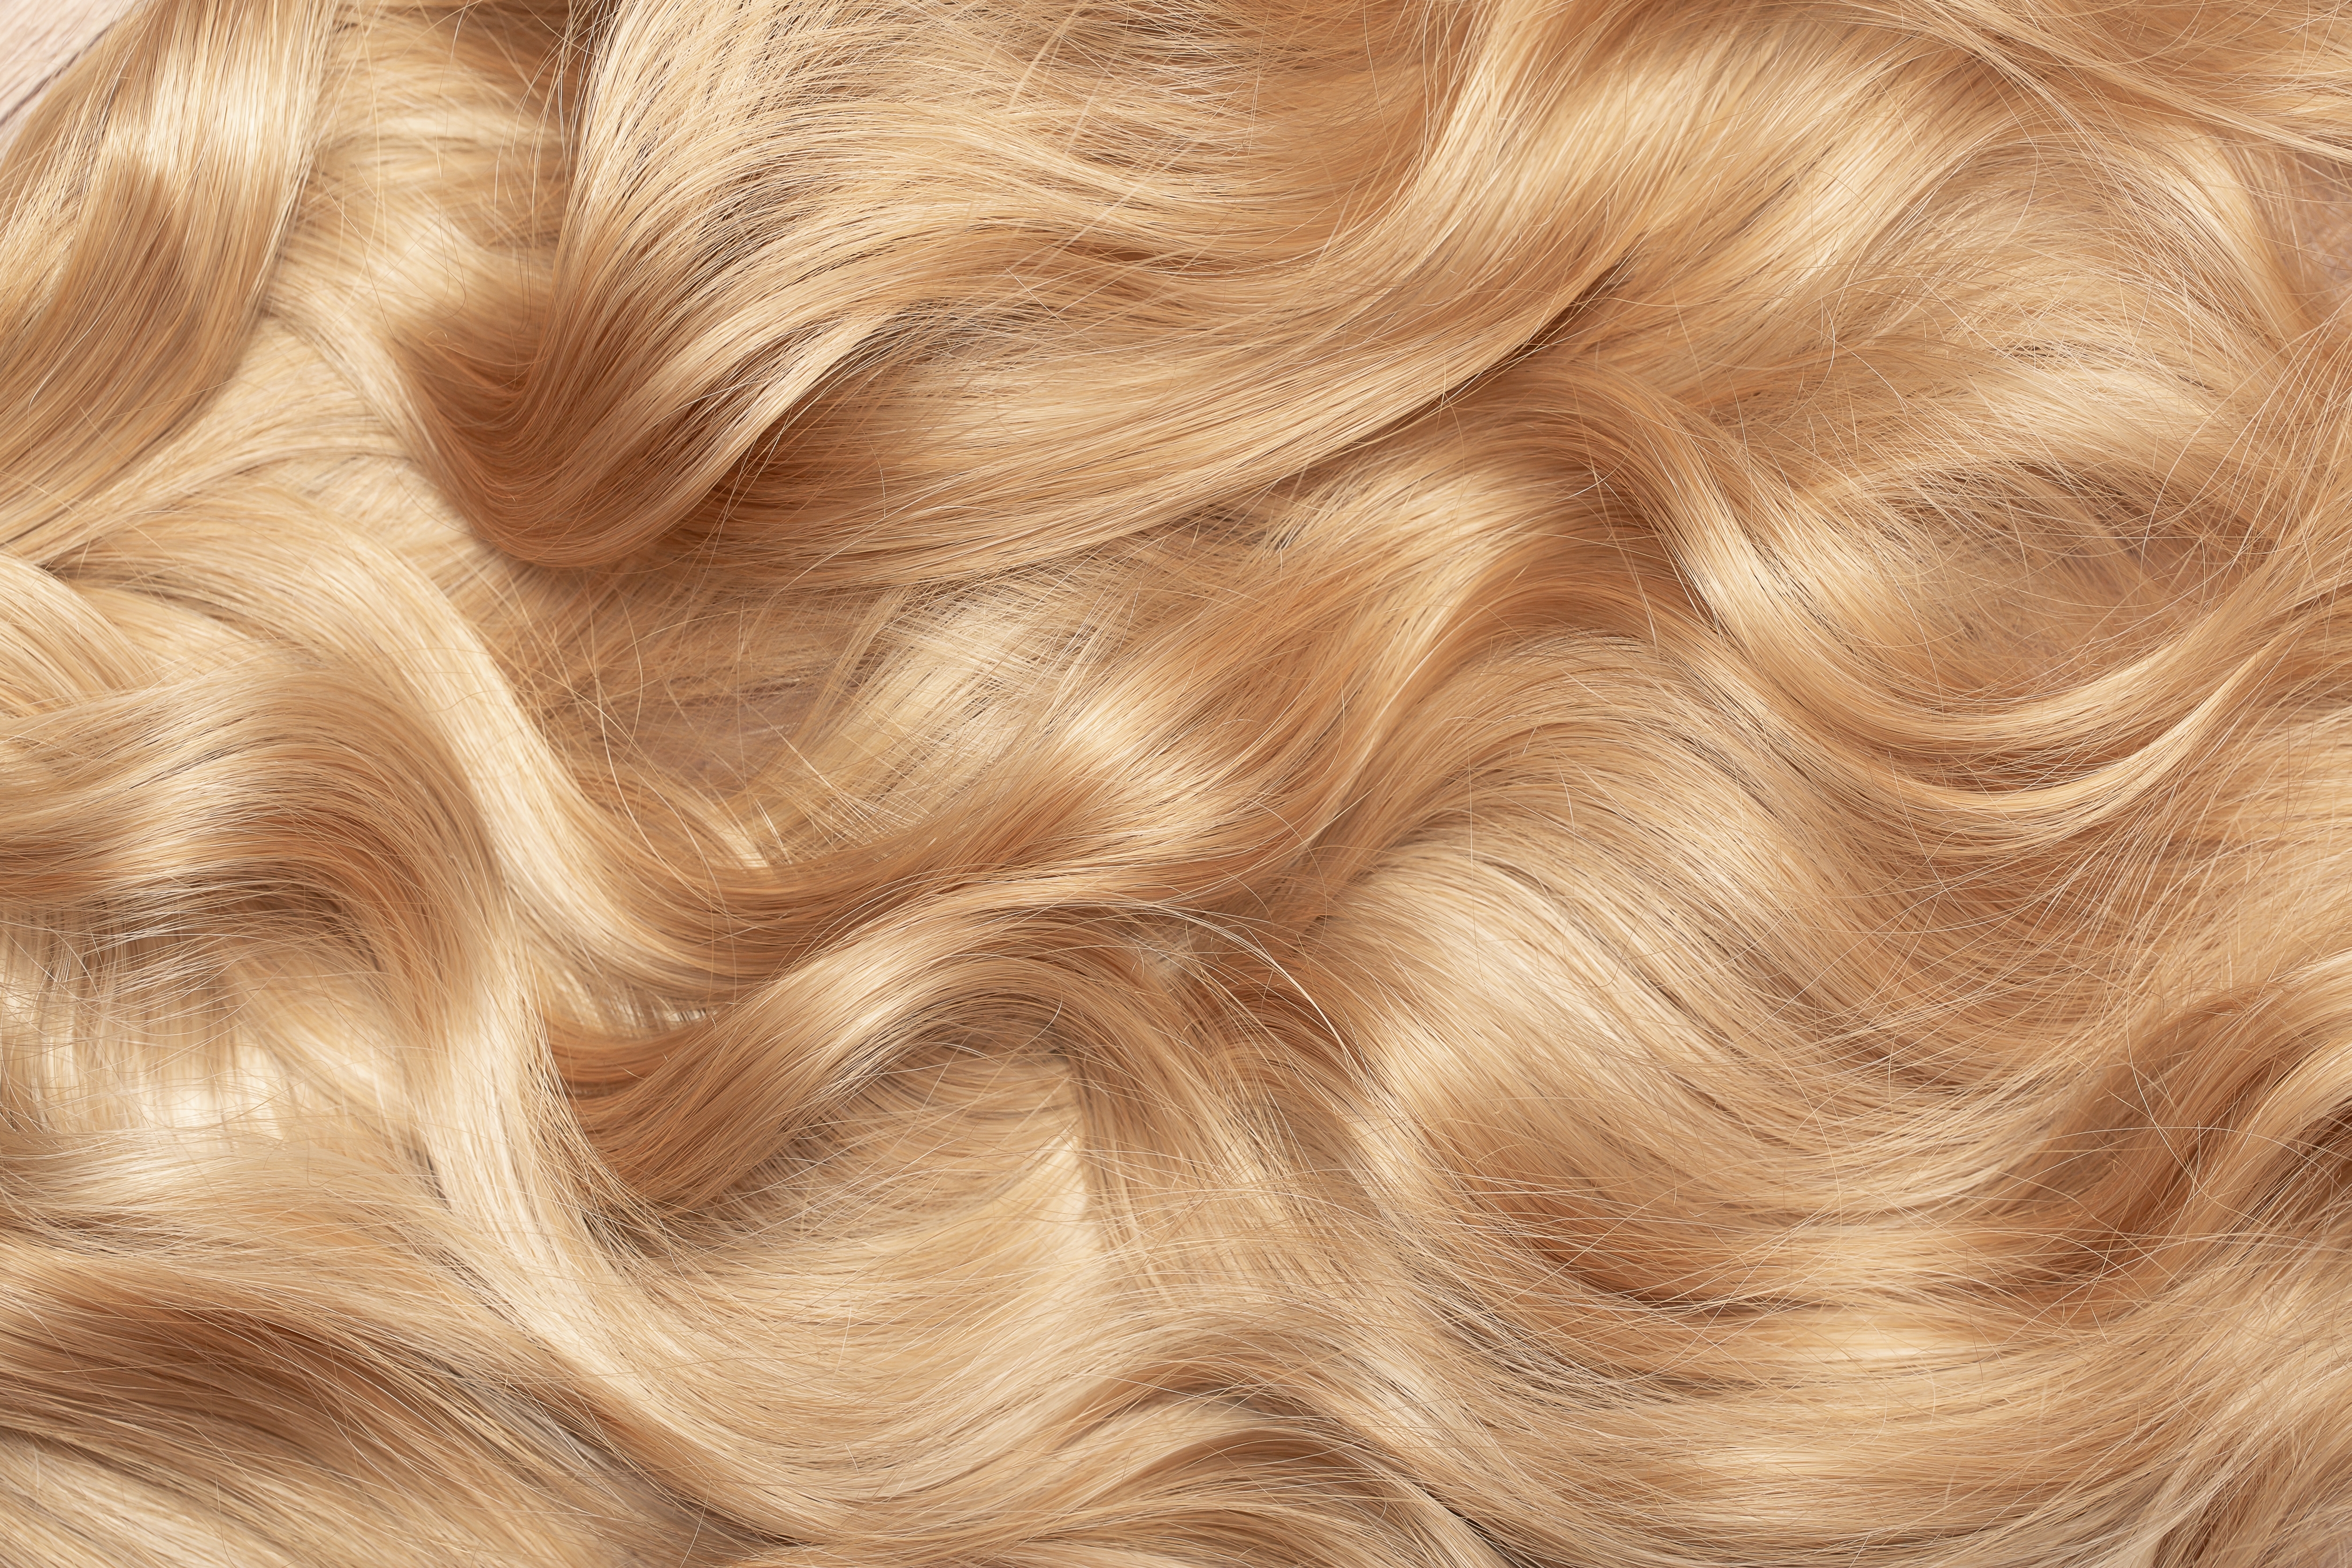 Mèches de cheveux blonds | Source : Shutterstock